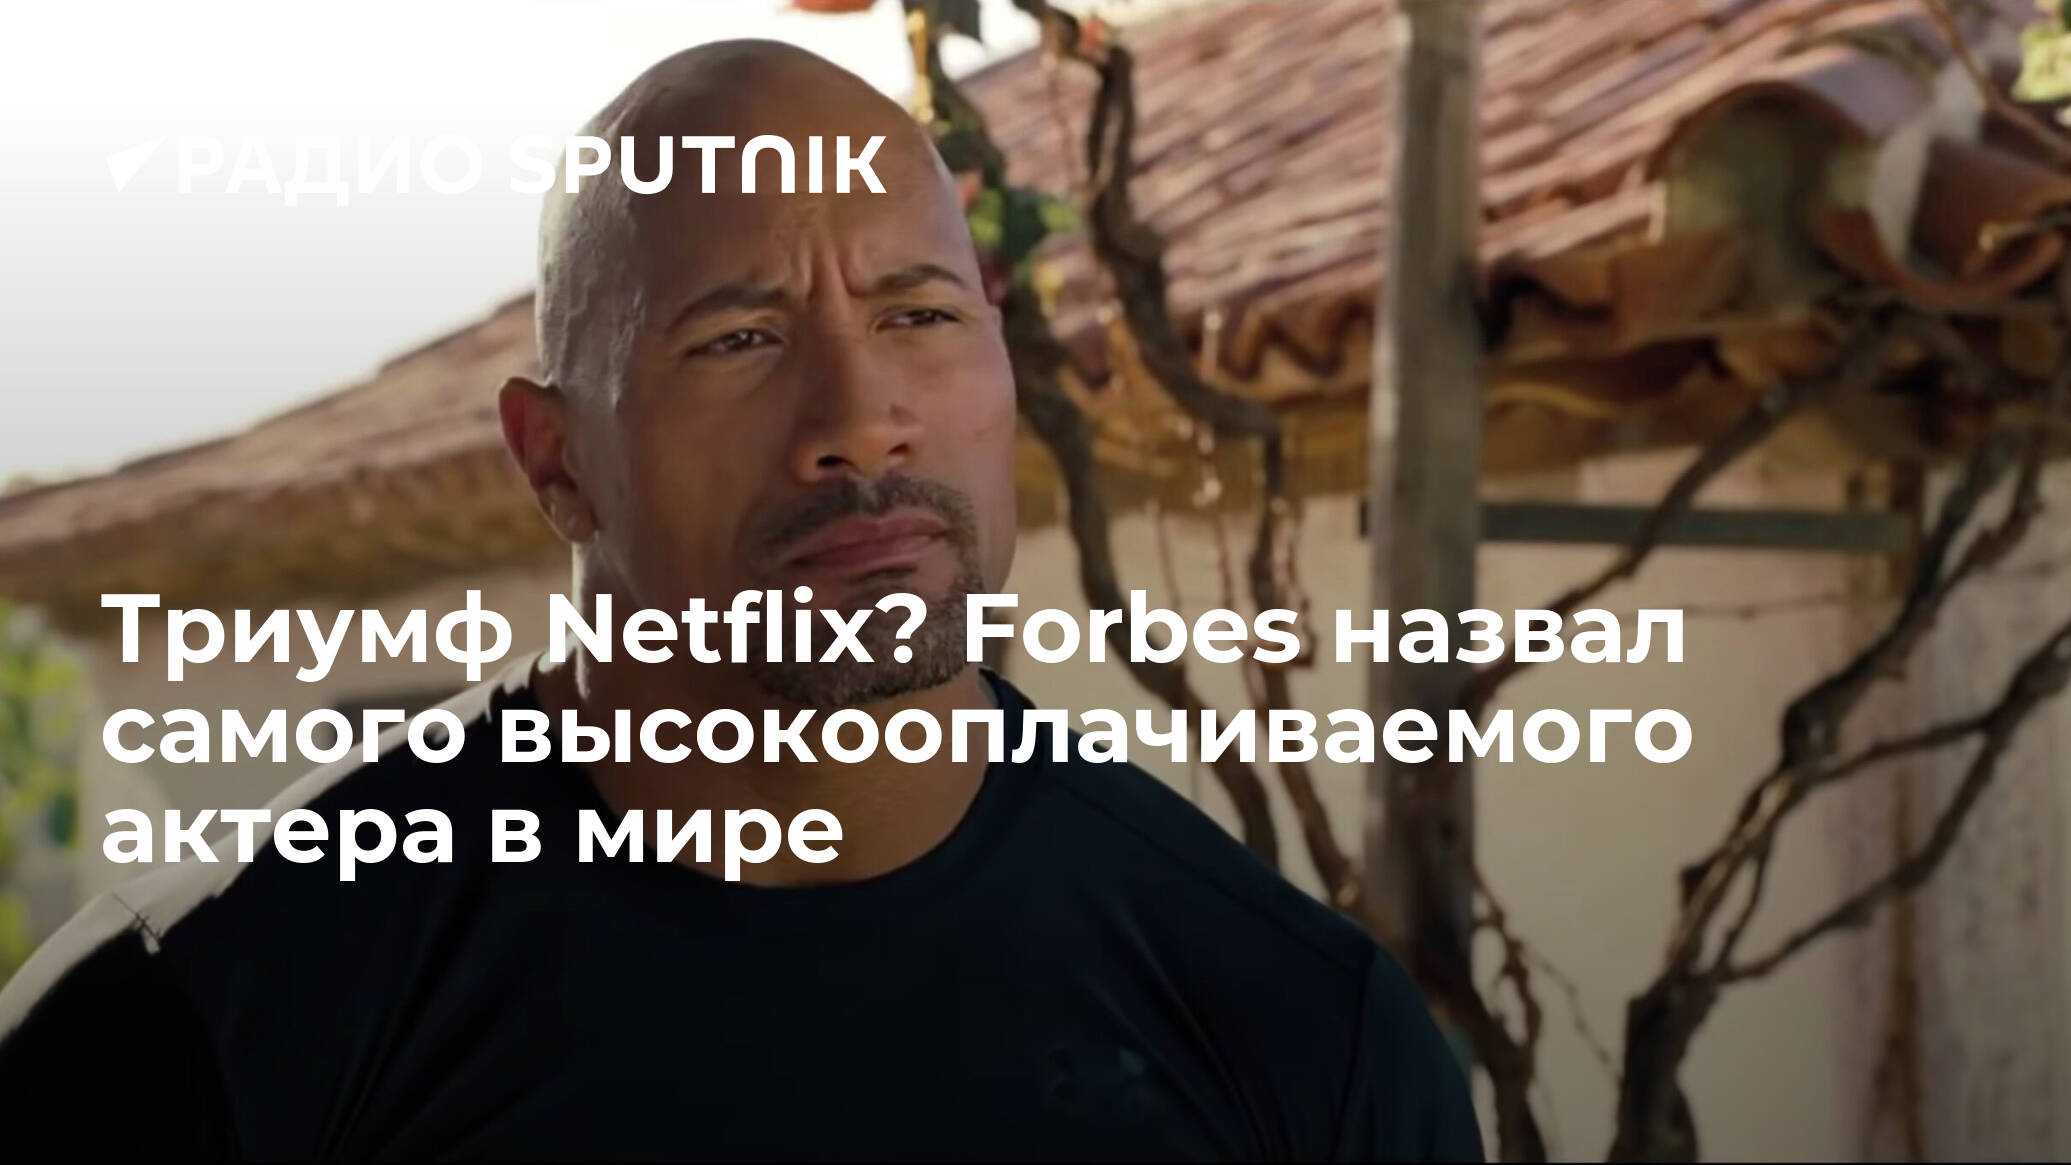 «триумф» (netflix) — 2 сезон: дата выхода обсуждается | sci-fi-news.ru